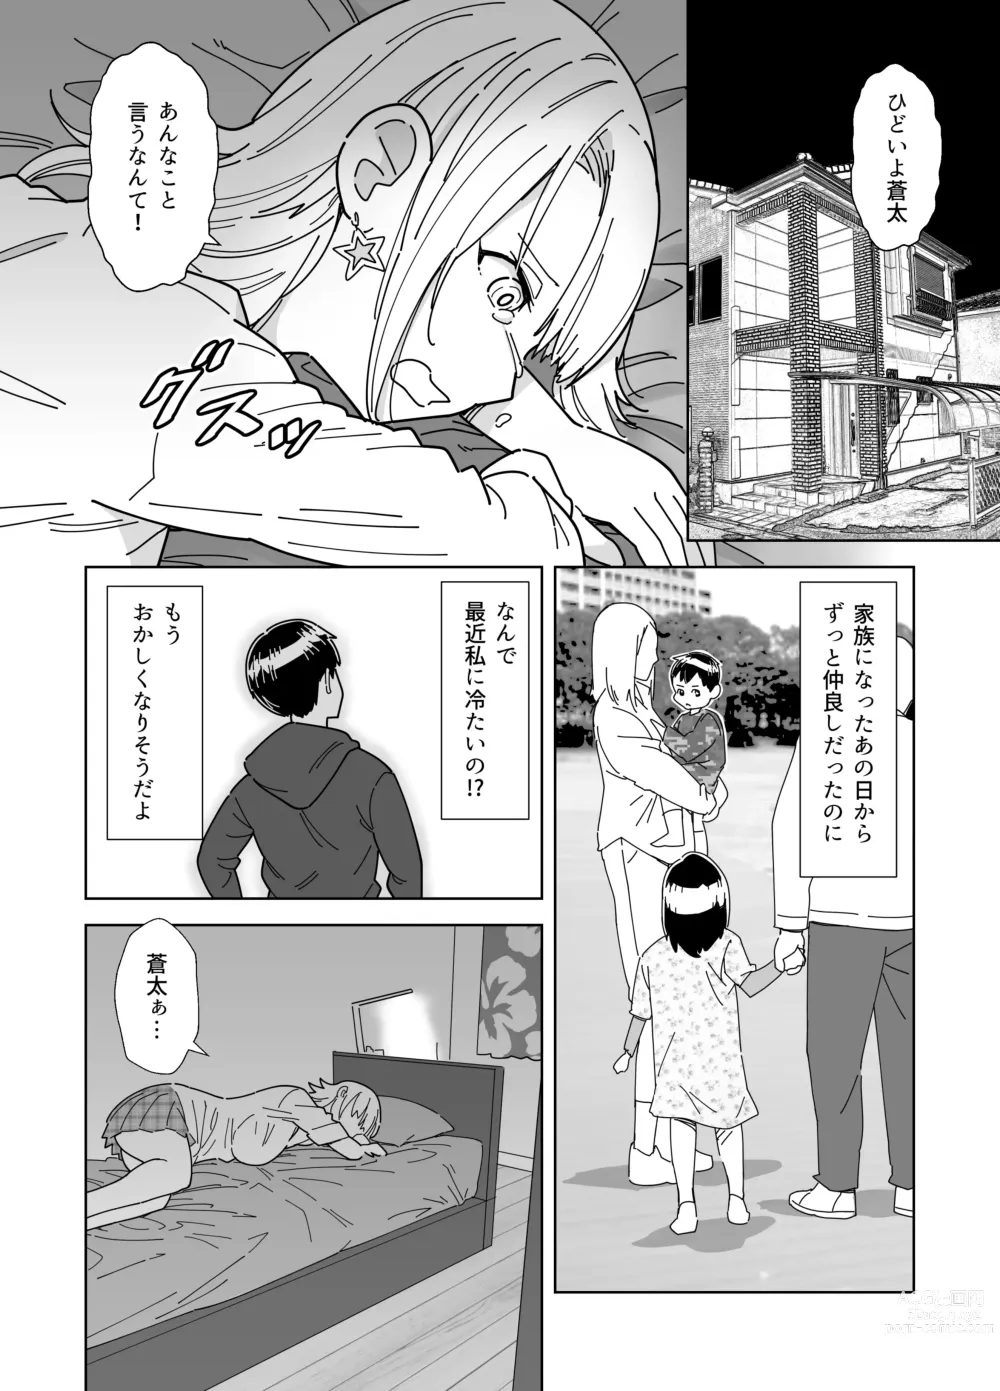 Page 3 of doujinshi Mekakushi Kossori Irekawatte Otouto to Yatte Mita